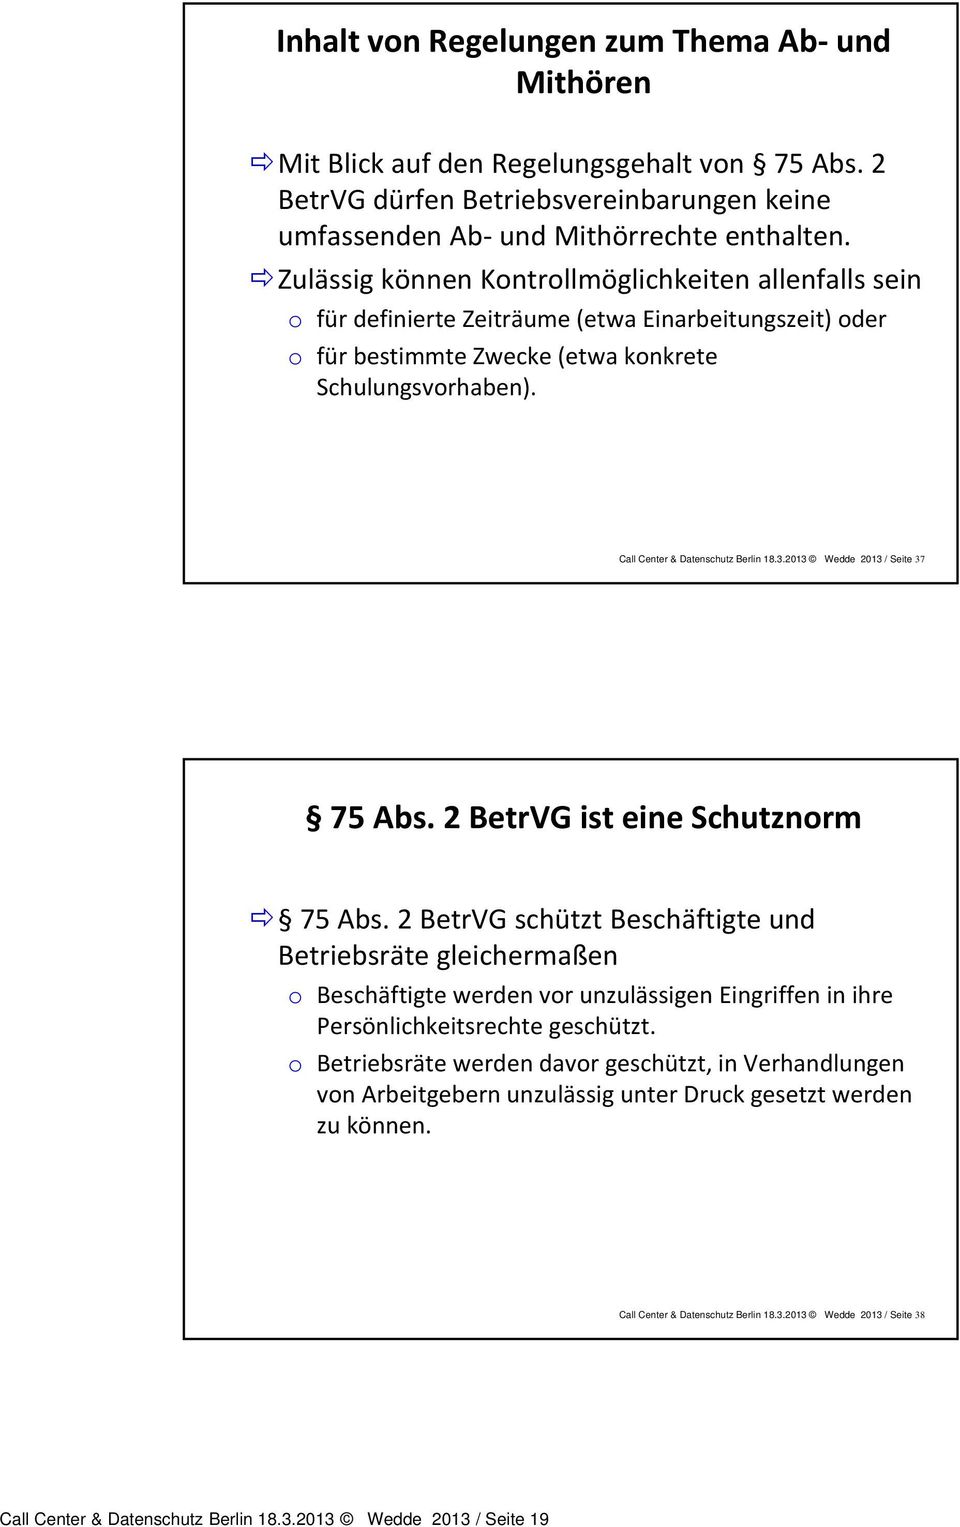 Call Center & Datenschutz Berlin 18.3.2013 Wedde 2013 / Seite 37 75 Abs. 2 BetrVG ist eine Schutznorm 75 Abs.